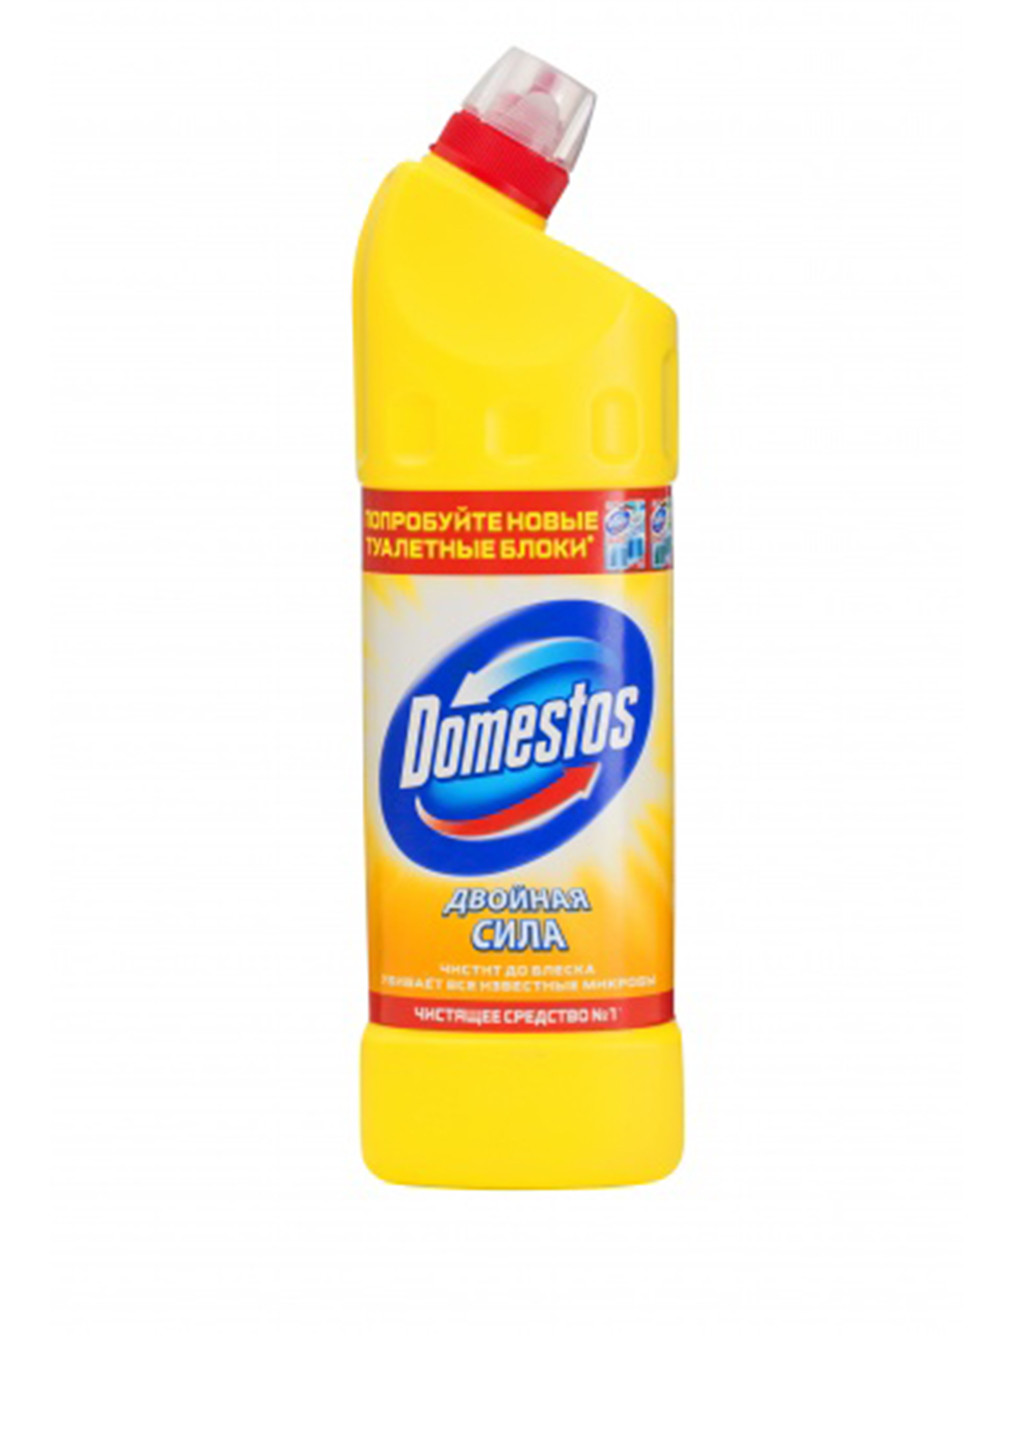 Чистящее средство для унитаза Лимонная свежесть, 1 л Domestos (138464943)